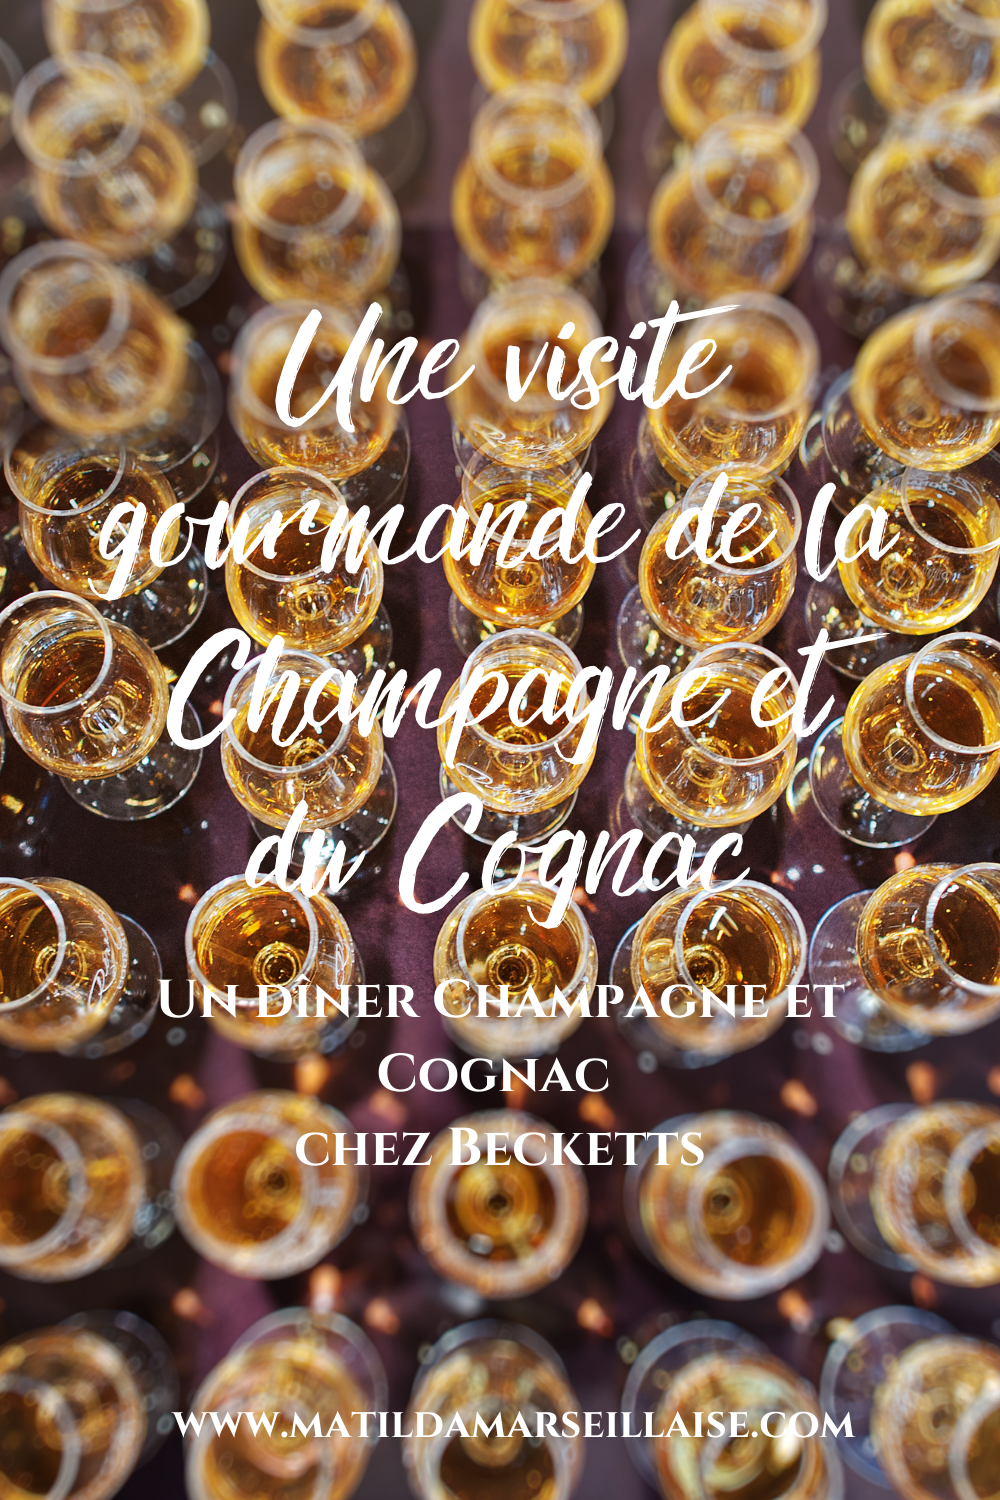 Rejoignez Beckett’s pour un dîner au champagne et au cognac ce jeudi